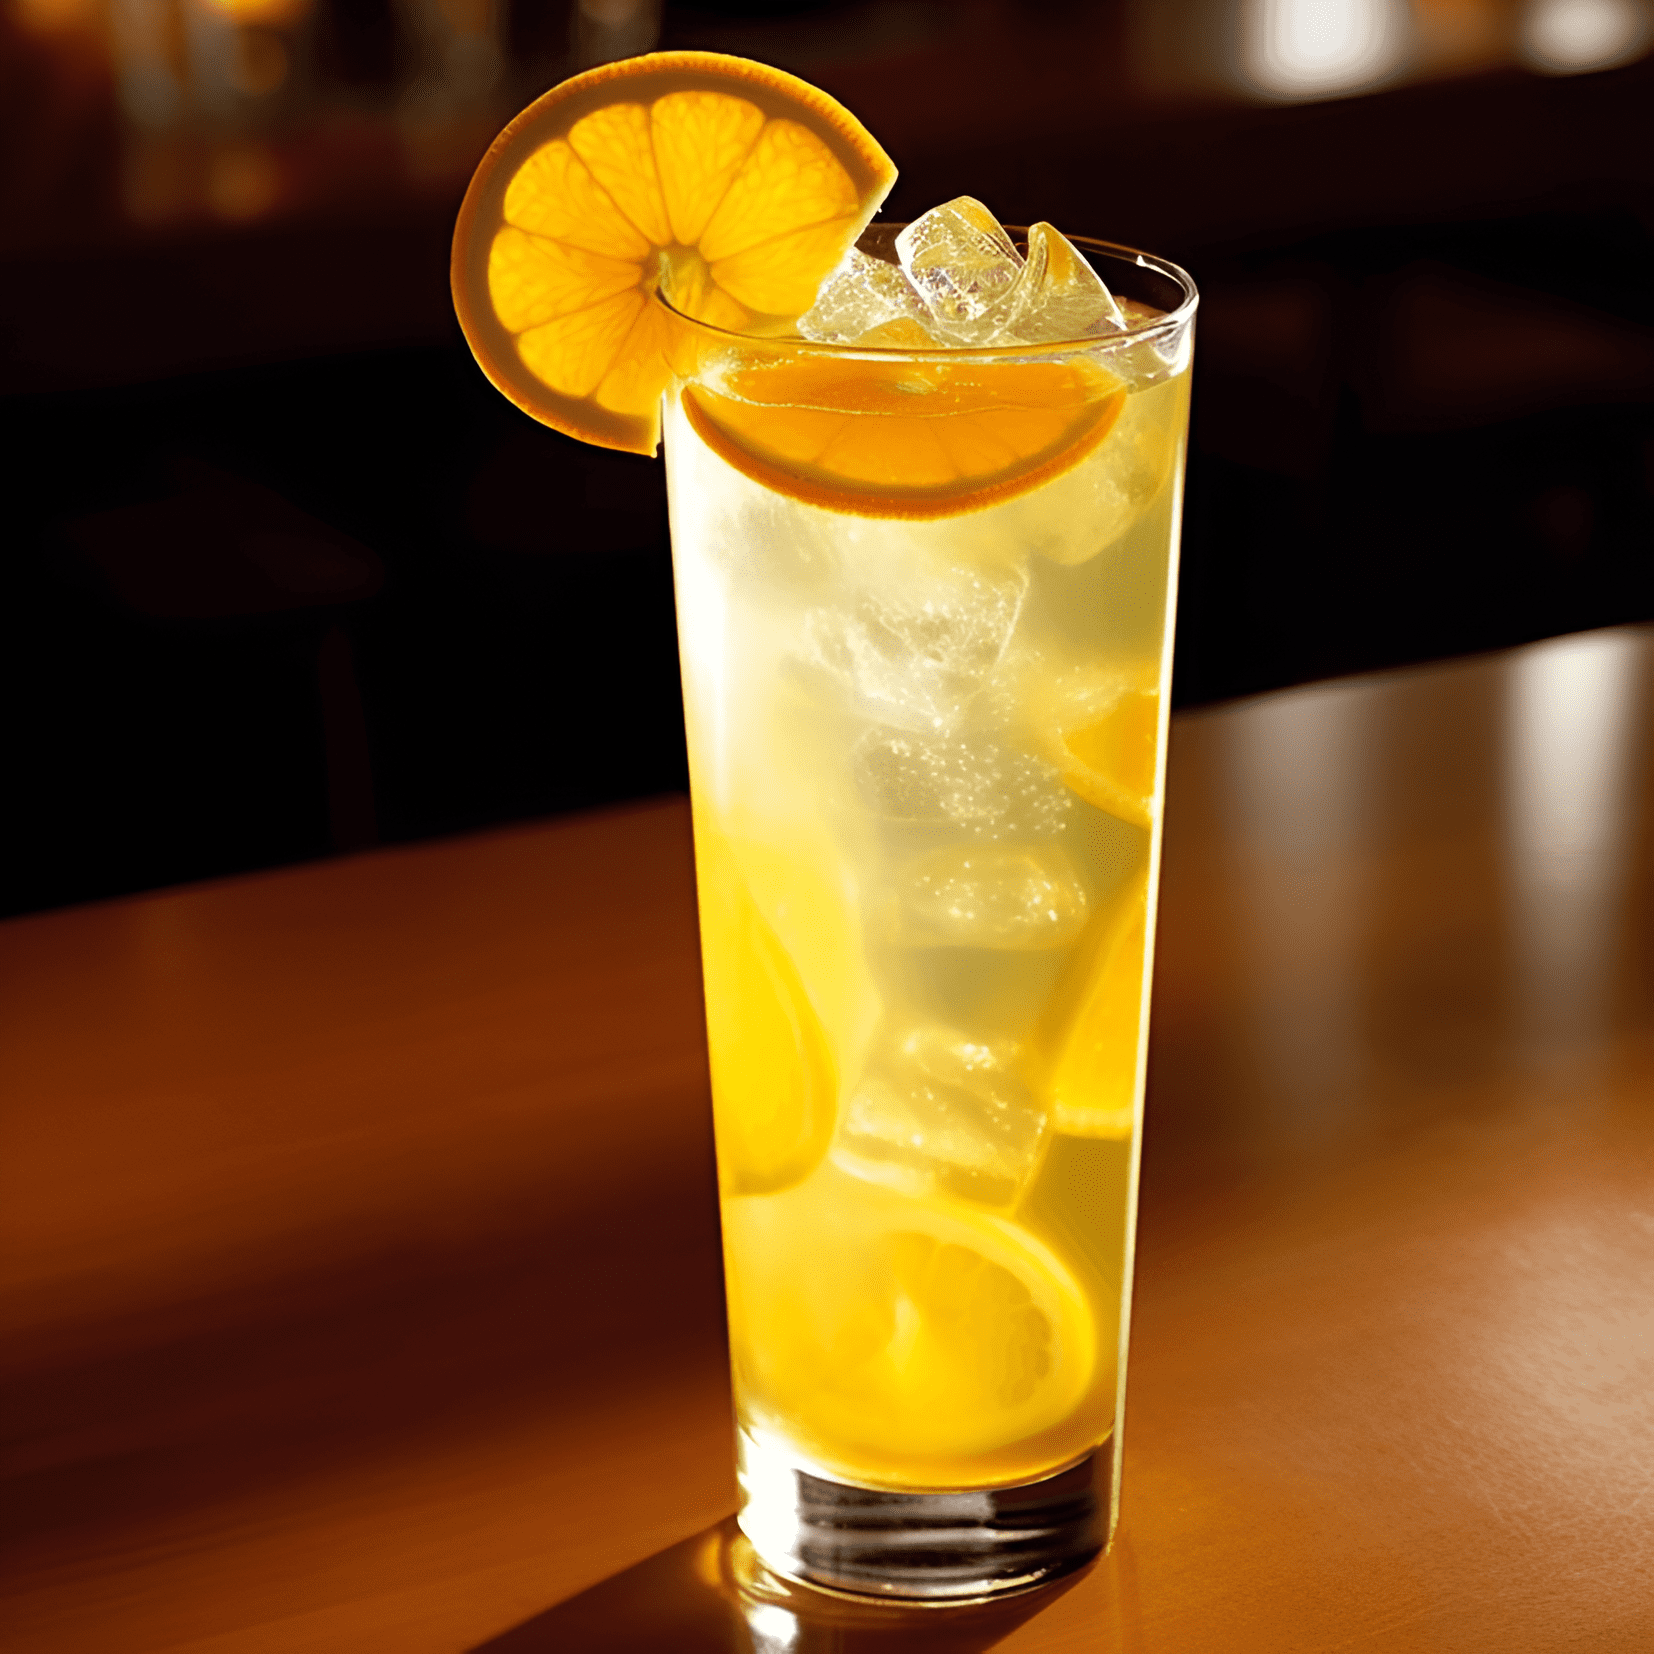 Citrus Cooler Cóctel Receta - El Citrus Cooler es un cóctel ligero, refrescante y con sabor a limón. Tiene un equilibrio perfecto de sabores dulces y ácidos, con un toque de amargor del pomelo. La combinación de frutas cítricas crea un sabor vibrante y vigorizante que es tanto refrescante como satisfactorio.